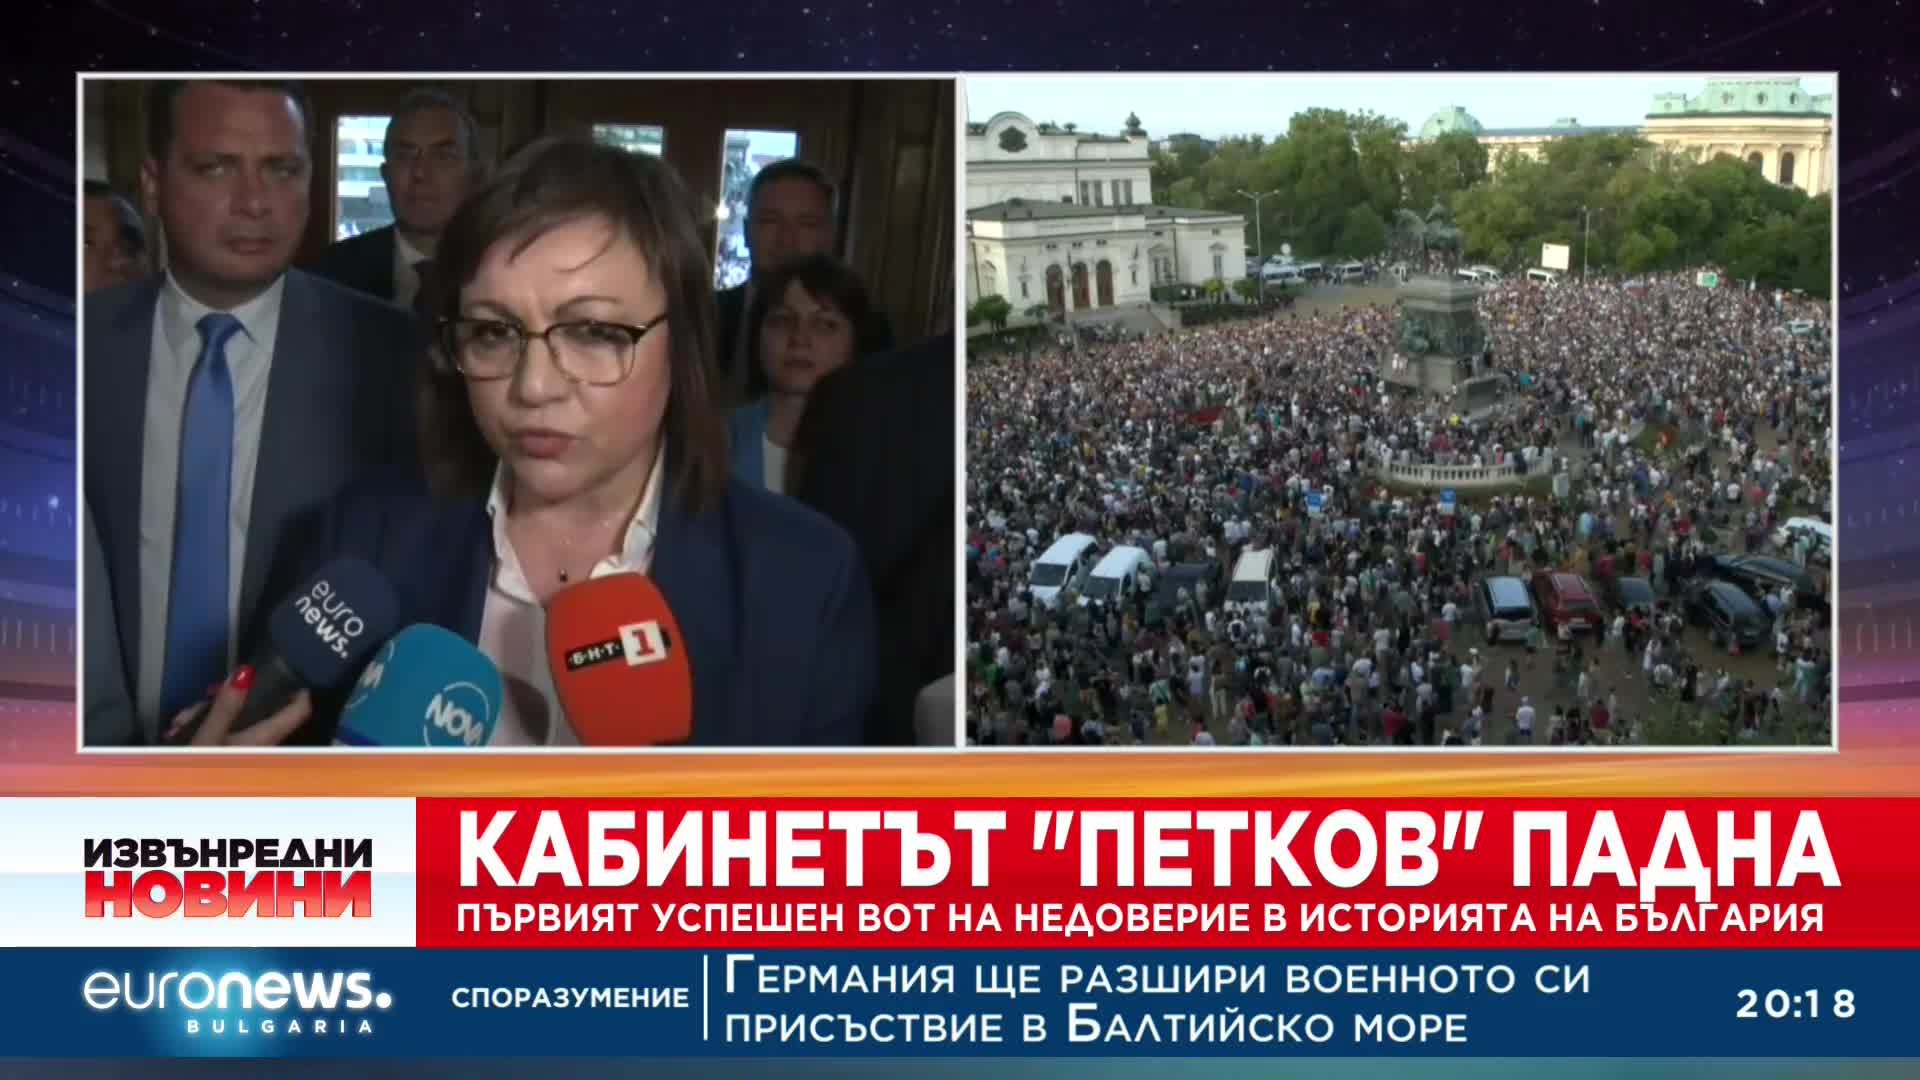 Корнелия Нинова: Най-тежкият вариант са нови избори